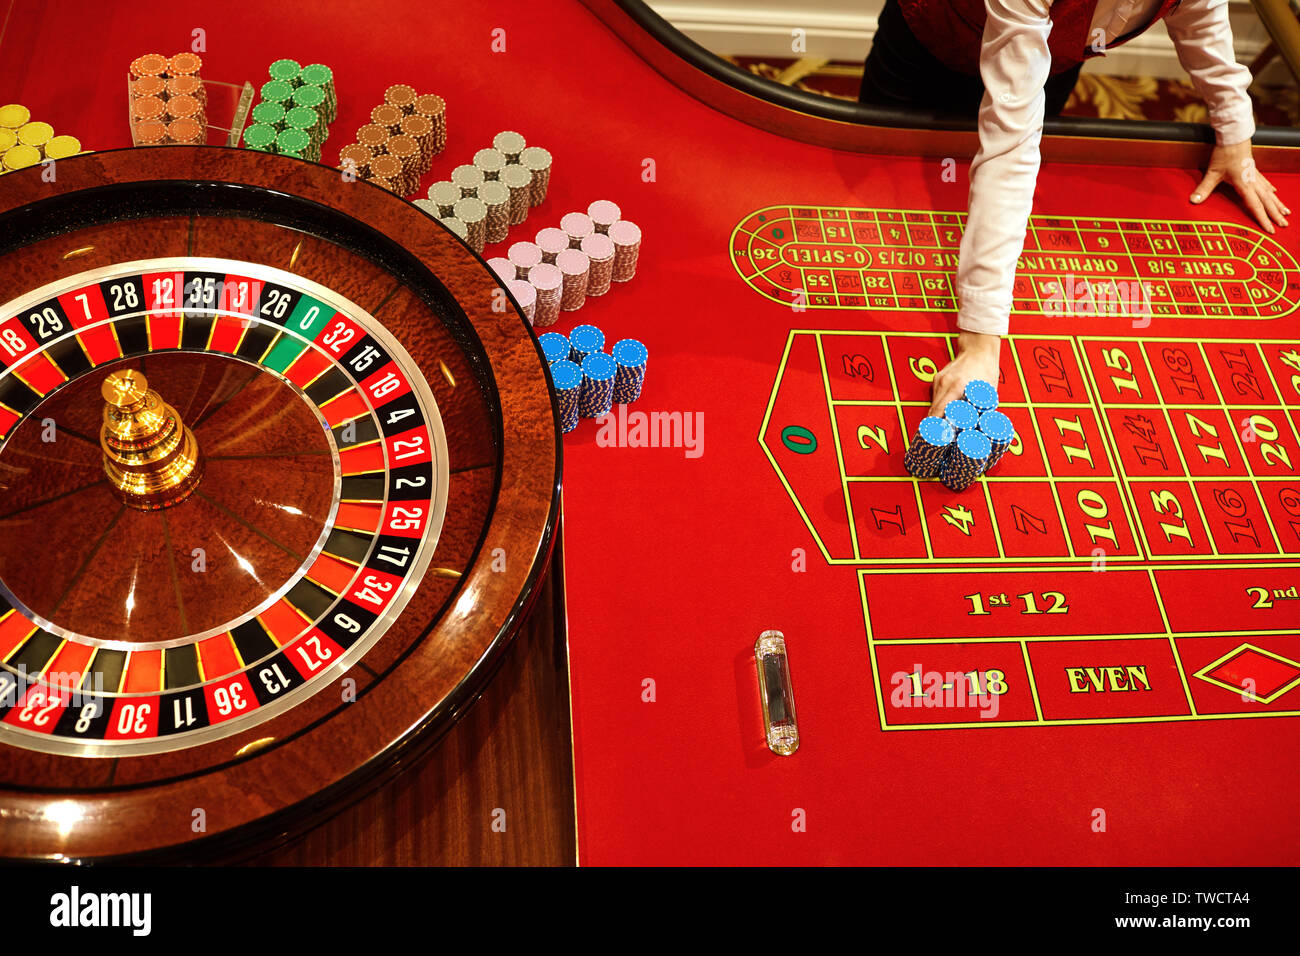 Hacer clic o no hacer clic: casino online ruleta y blogs